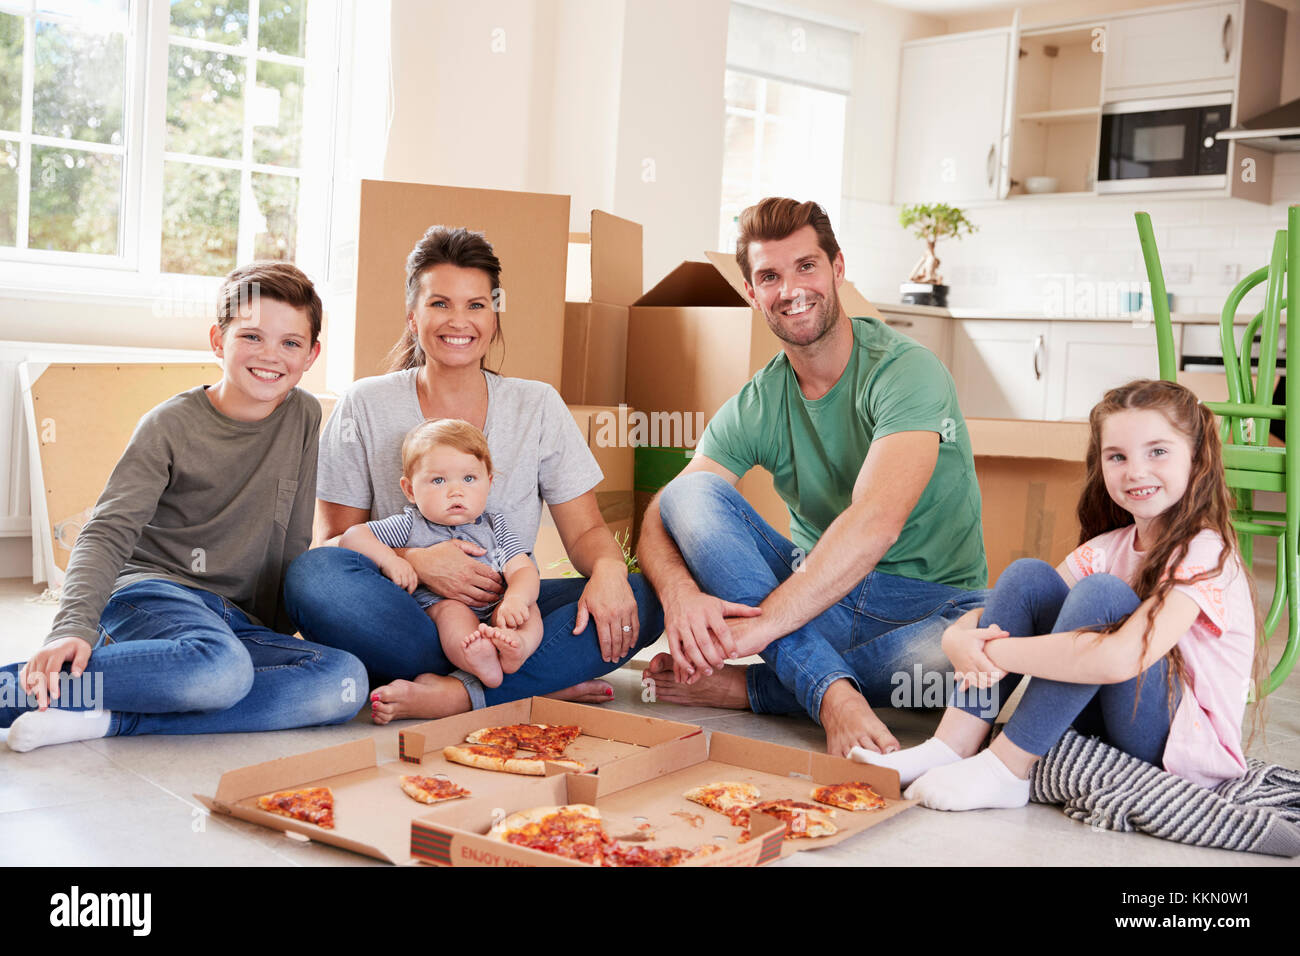 Porträt der Familie feiert Umzug in neues Haus mit Pizza Stockfoto